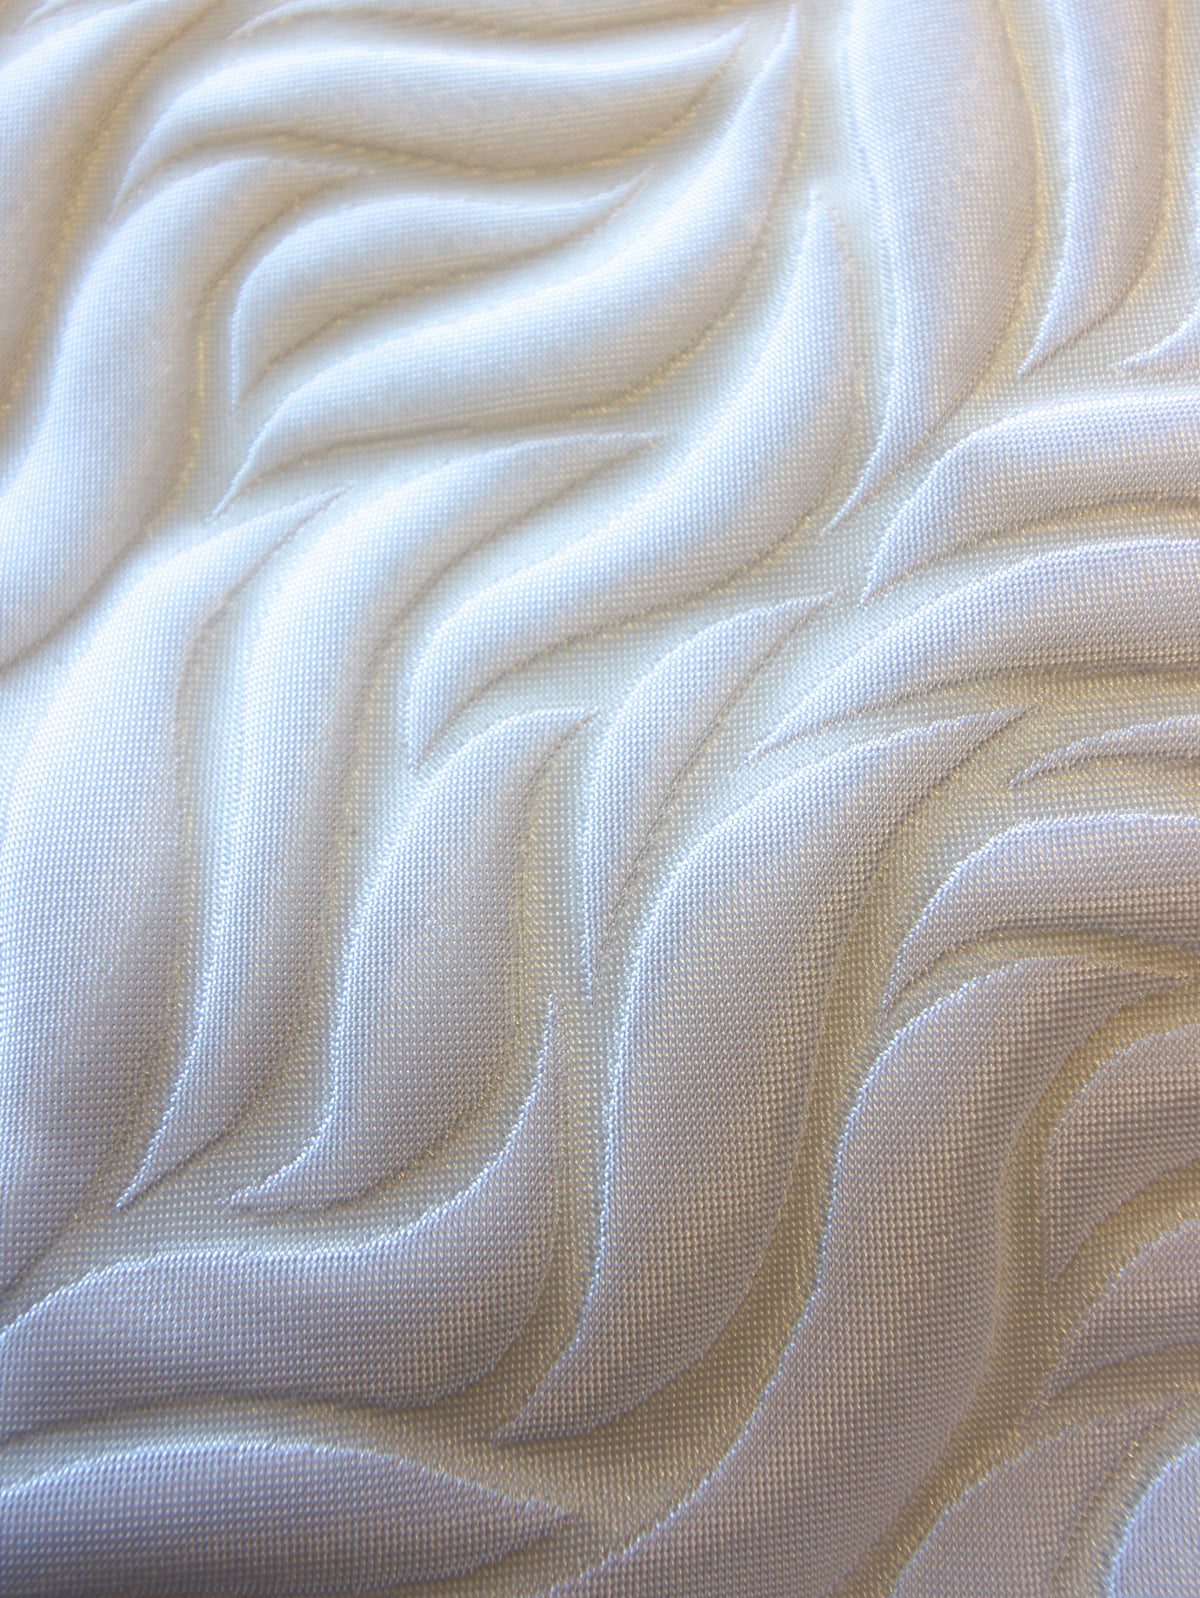 White Waistcoat Fabric - Madrid